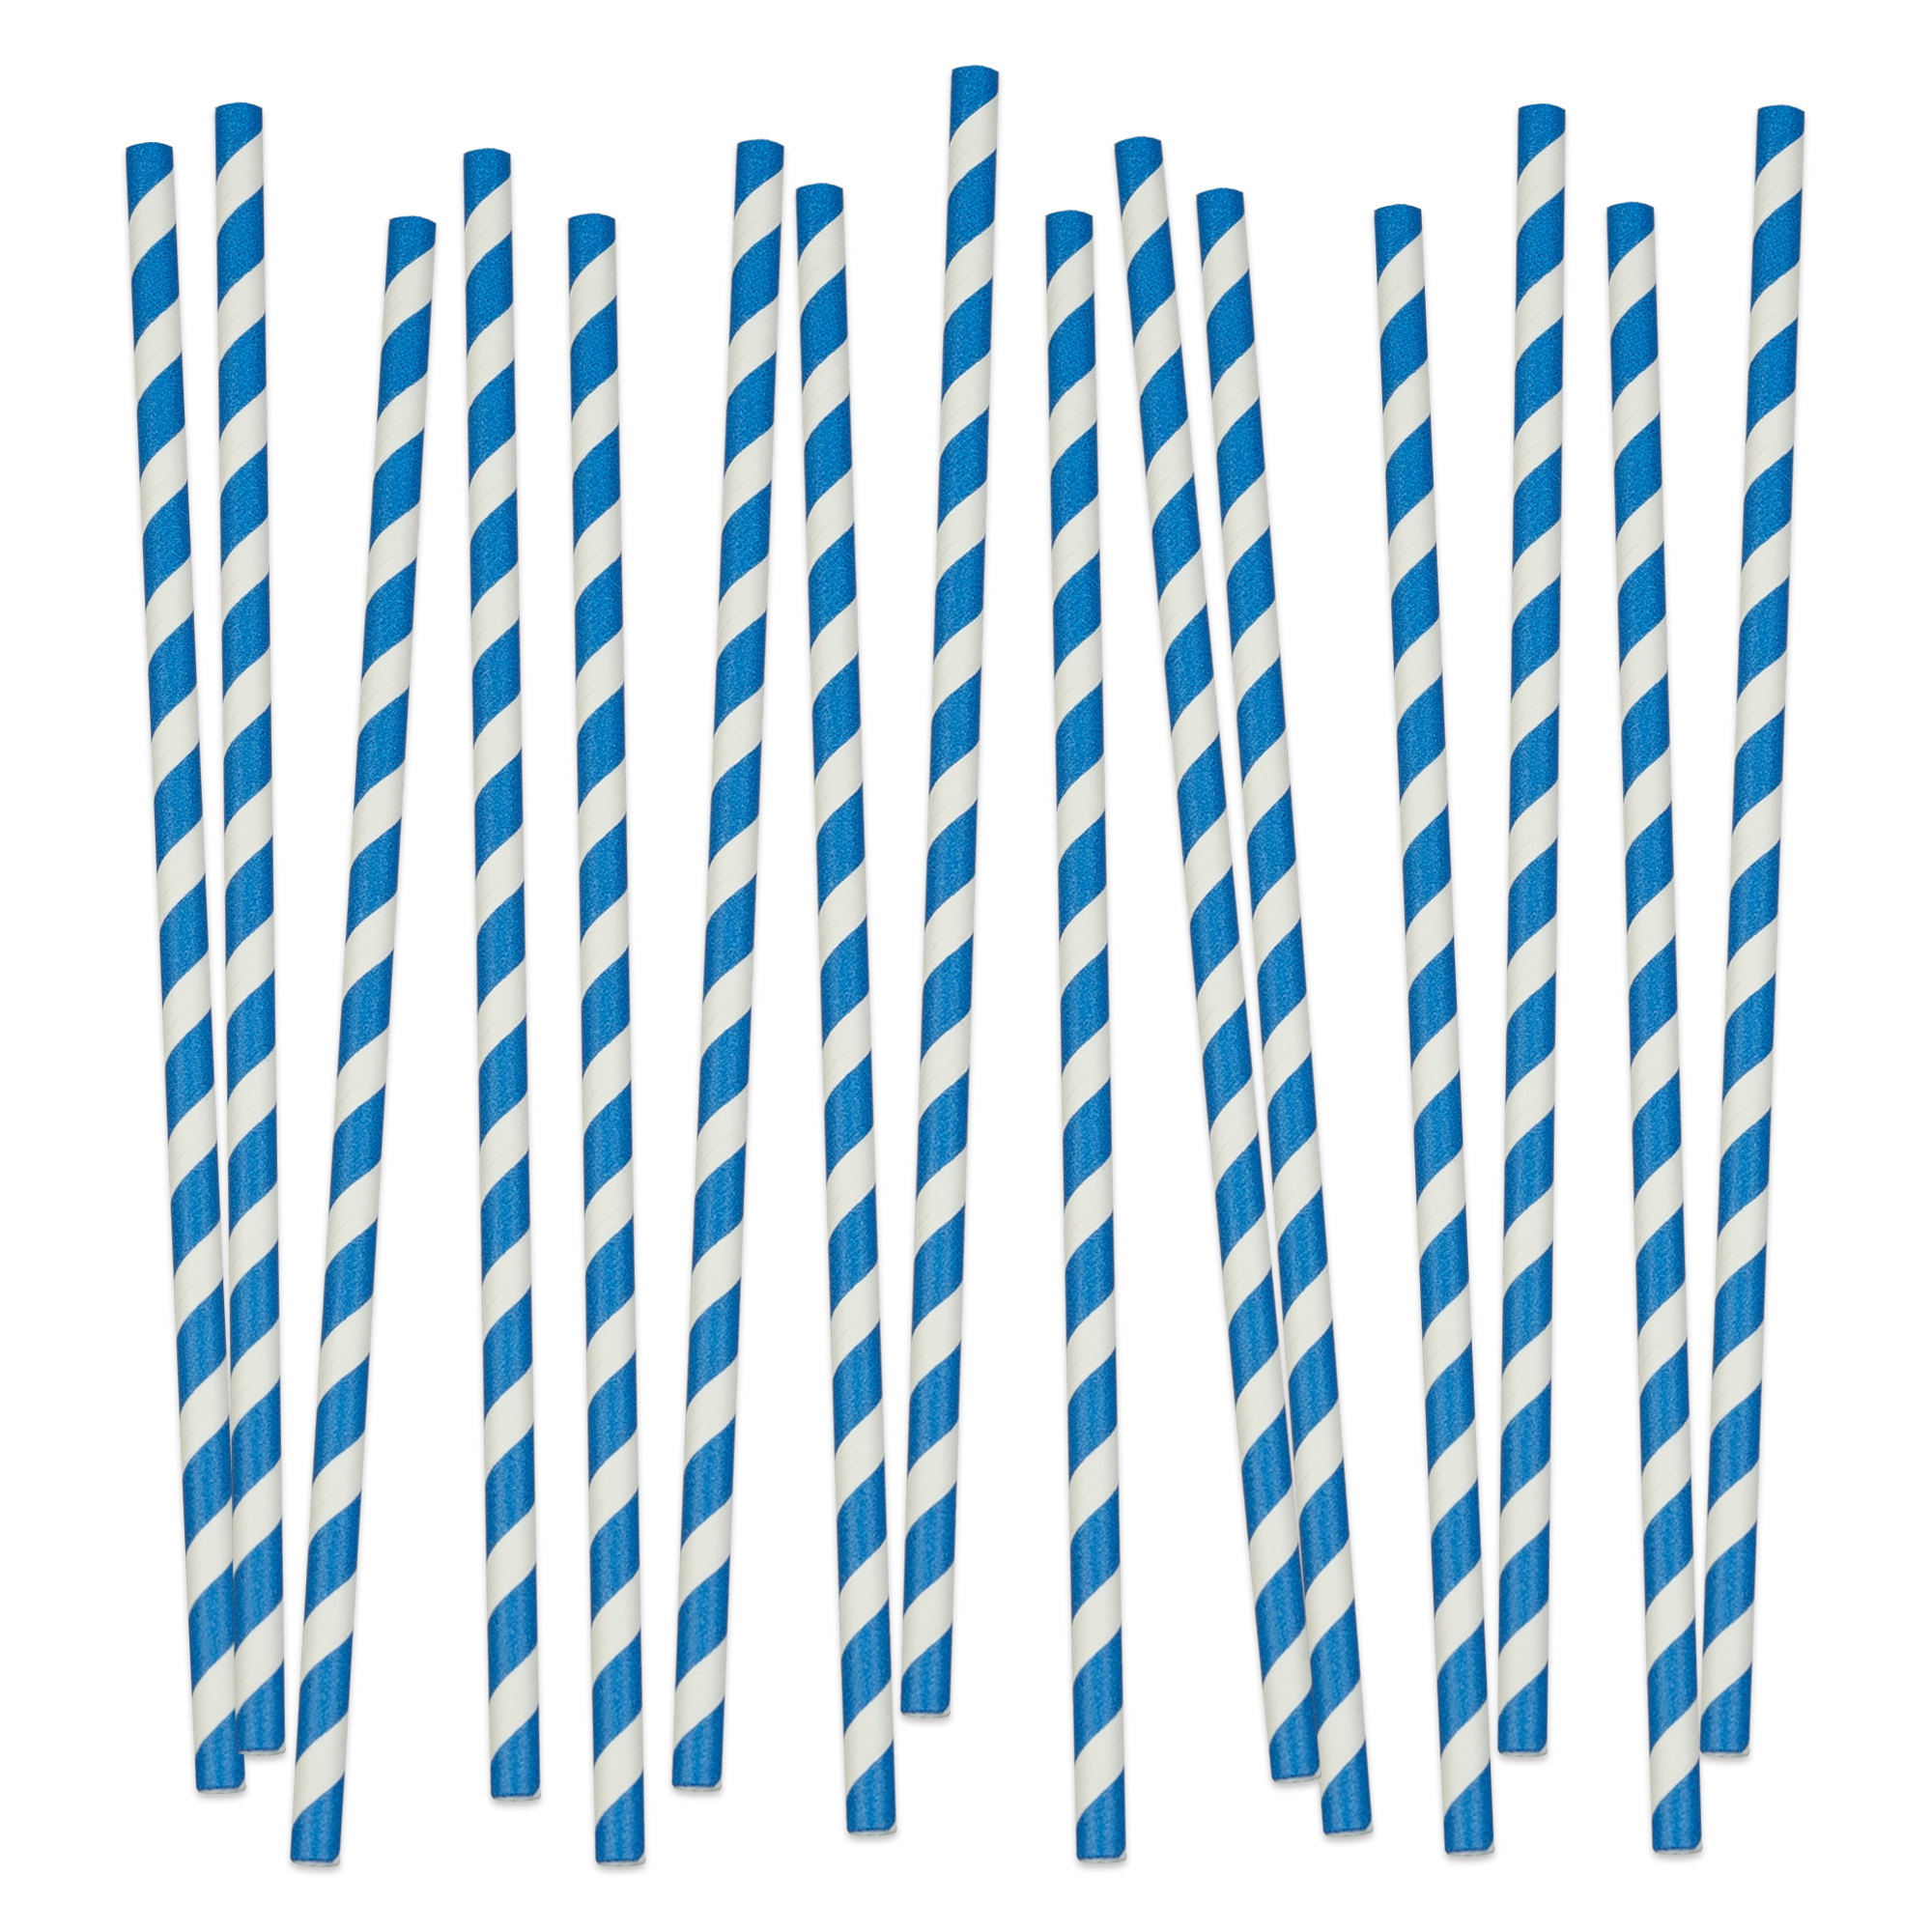 Papier Trinkhalme weiß blau gestreift, 200 mm x 6 mm  